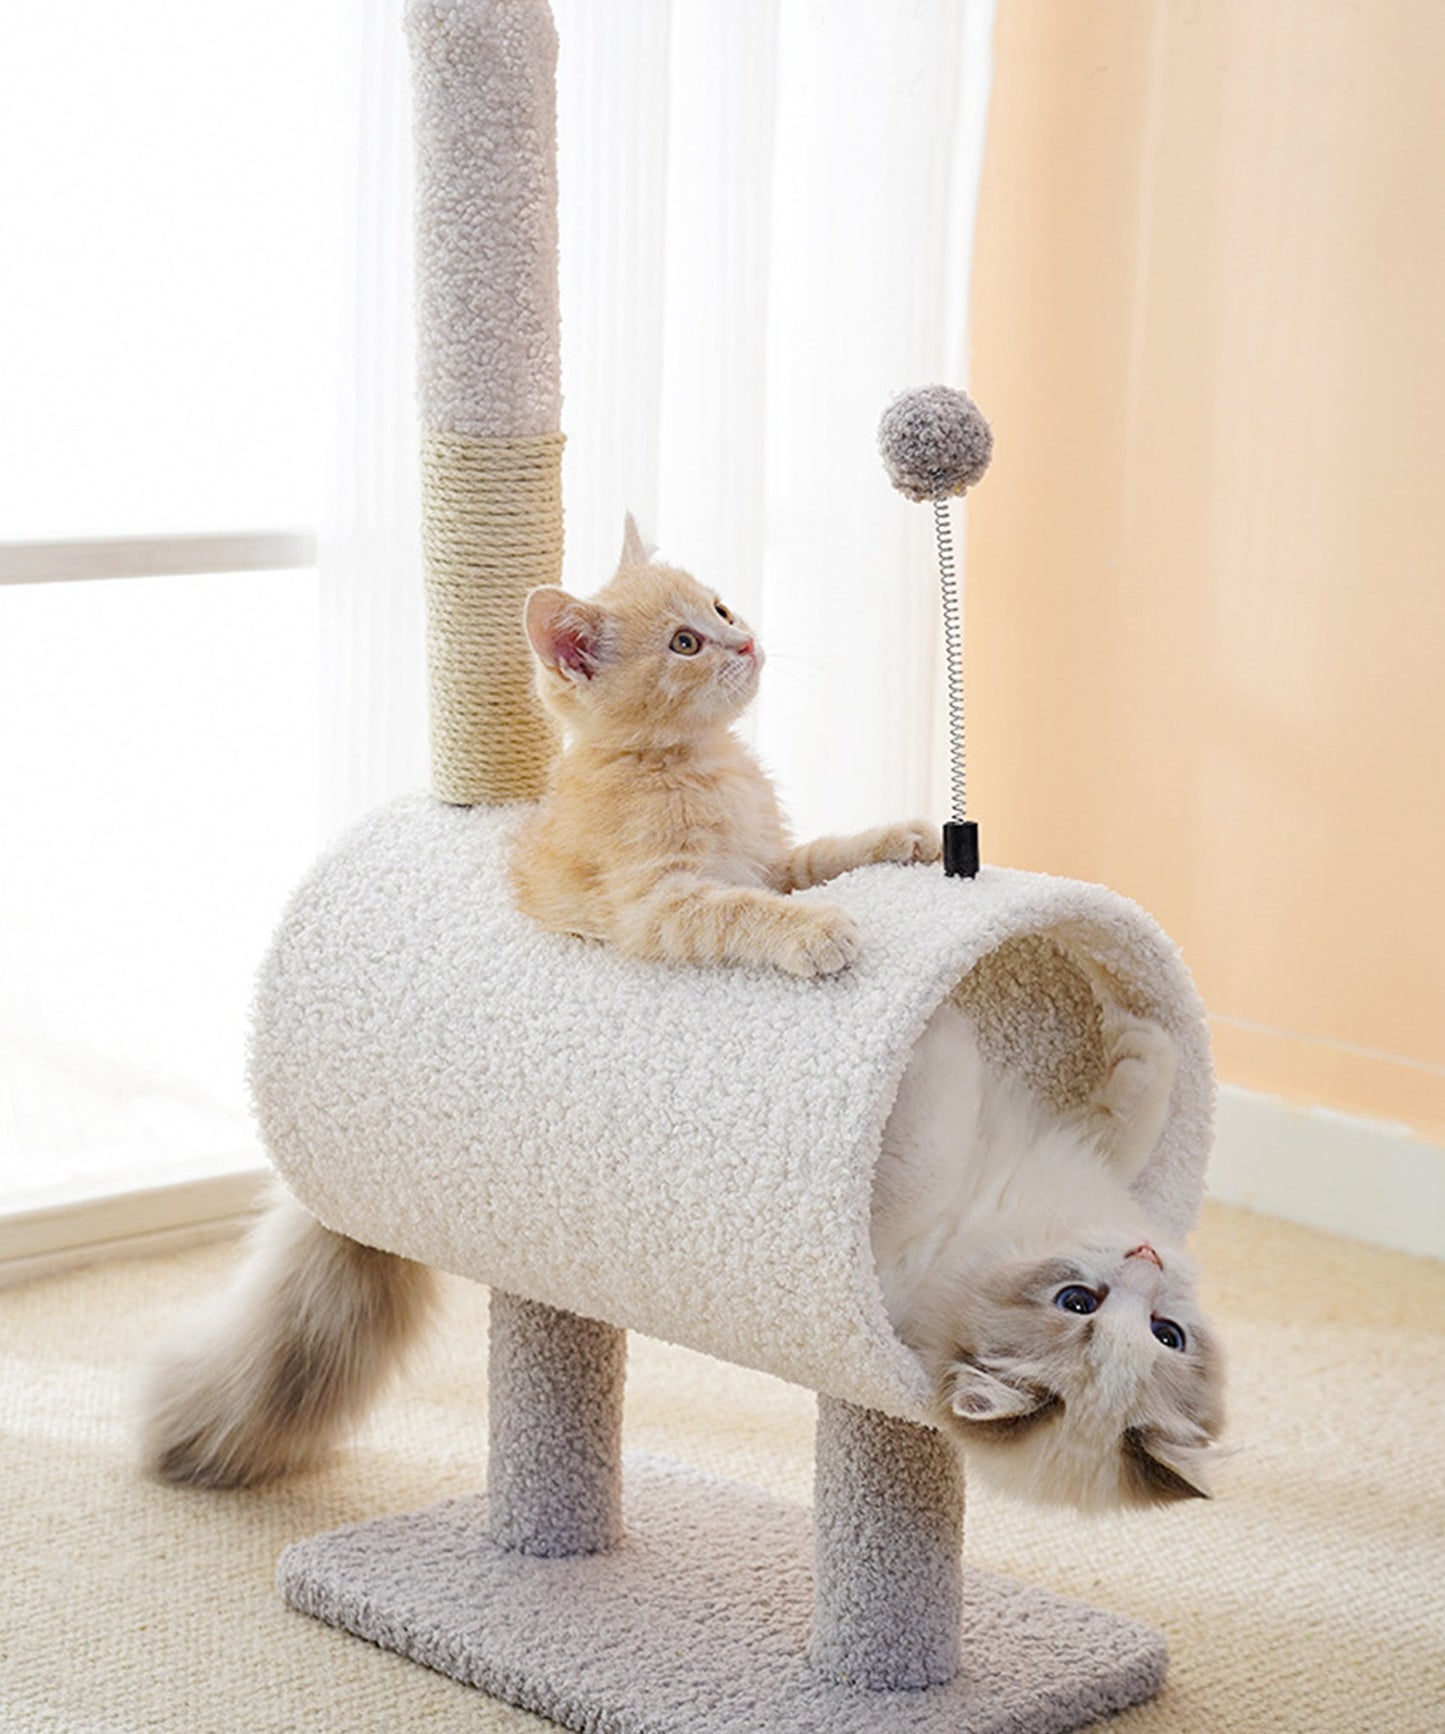 動物形キャットタワー猫用おもちゃ